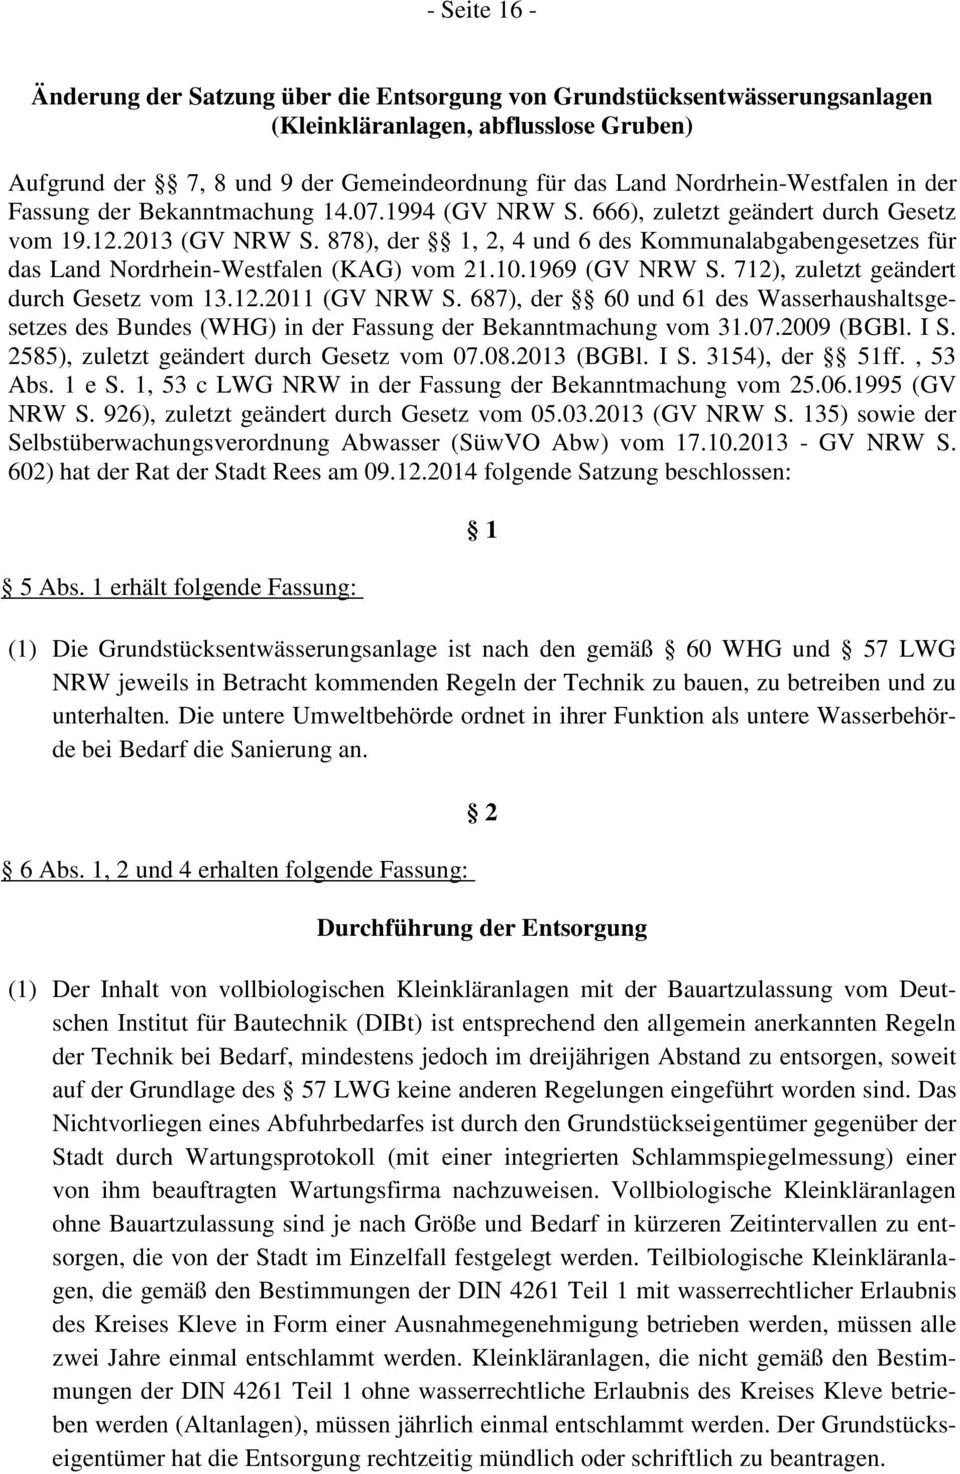 878), der 1, 2, 4 und 6 des Kommunalabgabengesetzes für das Land Nordrhein-Westfalen (KAG) vom 21.10.1969 (GV NRW S. 712), zuletzt geändert durch Gesetz vom 13.12.2011 (GV NRW S.